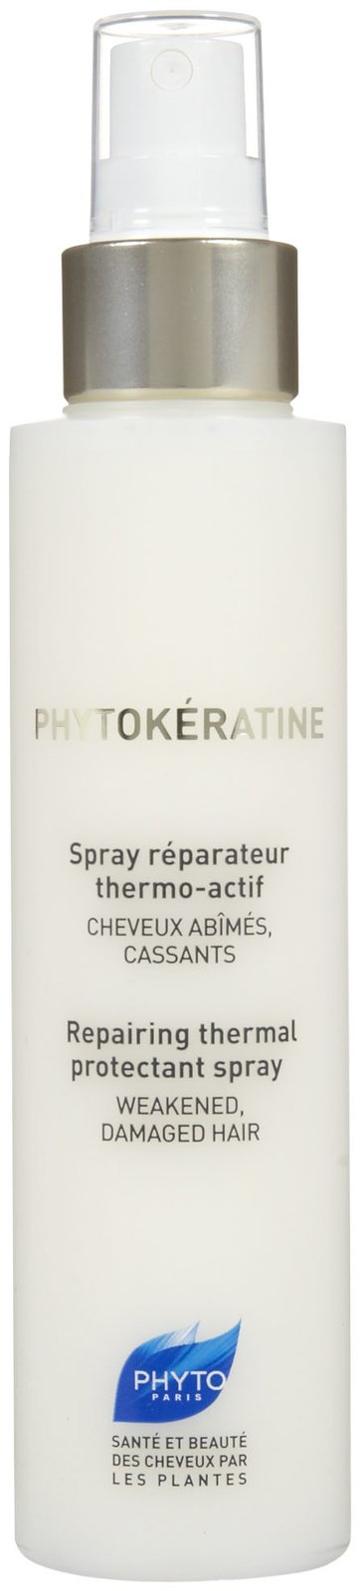 Phyto Phytokeratine Spray